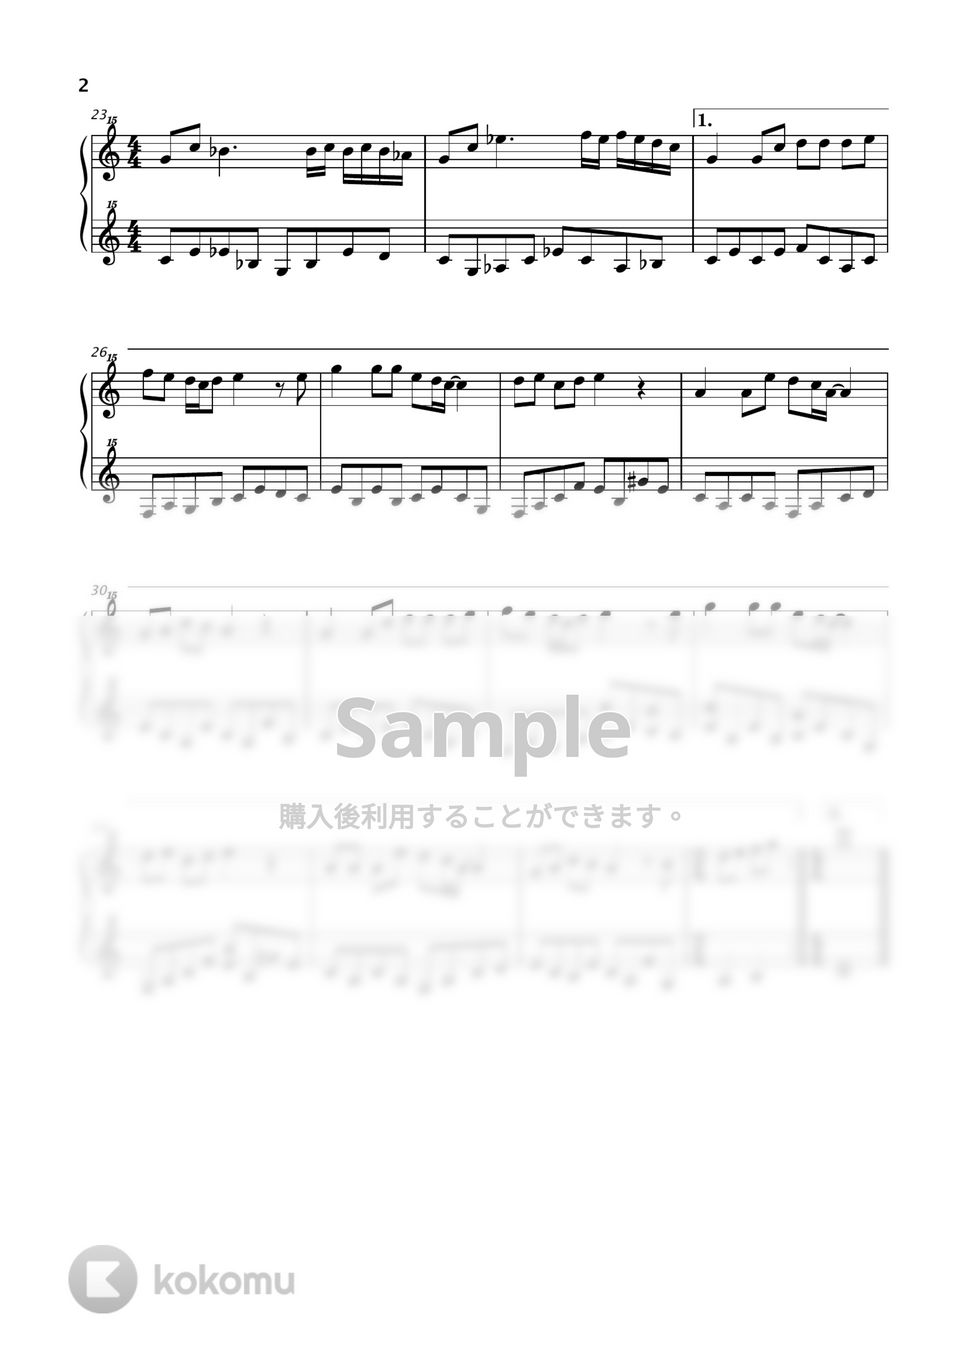 谷山浩子 - テルーの唄 (ゲド戦記 / トイピアノ / 32鍵盤) by 川西三裕